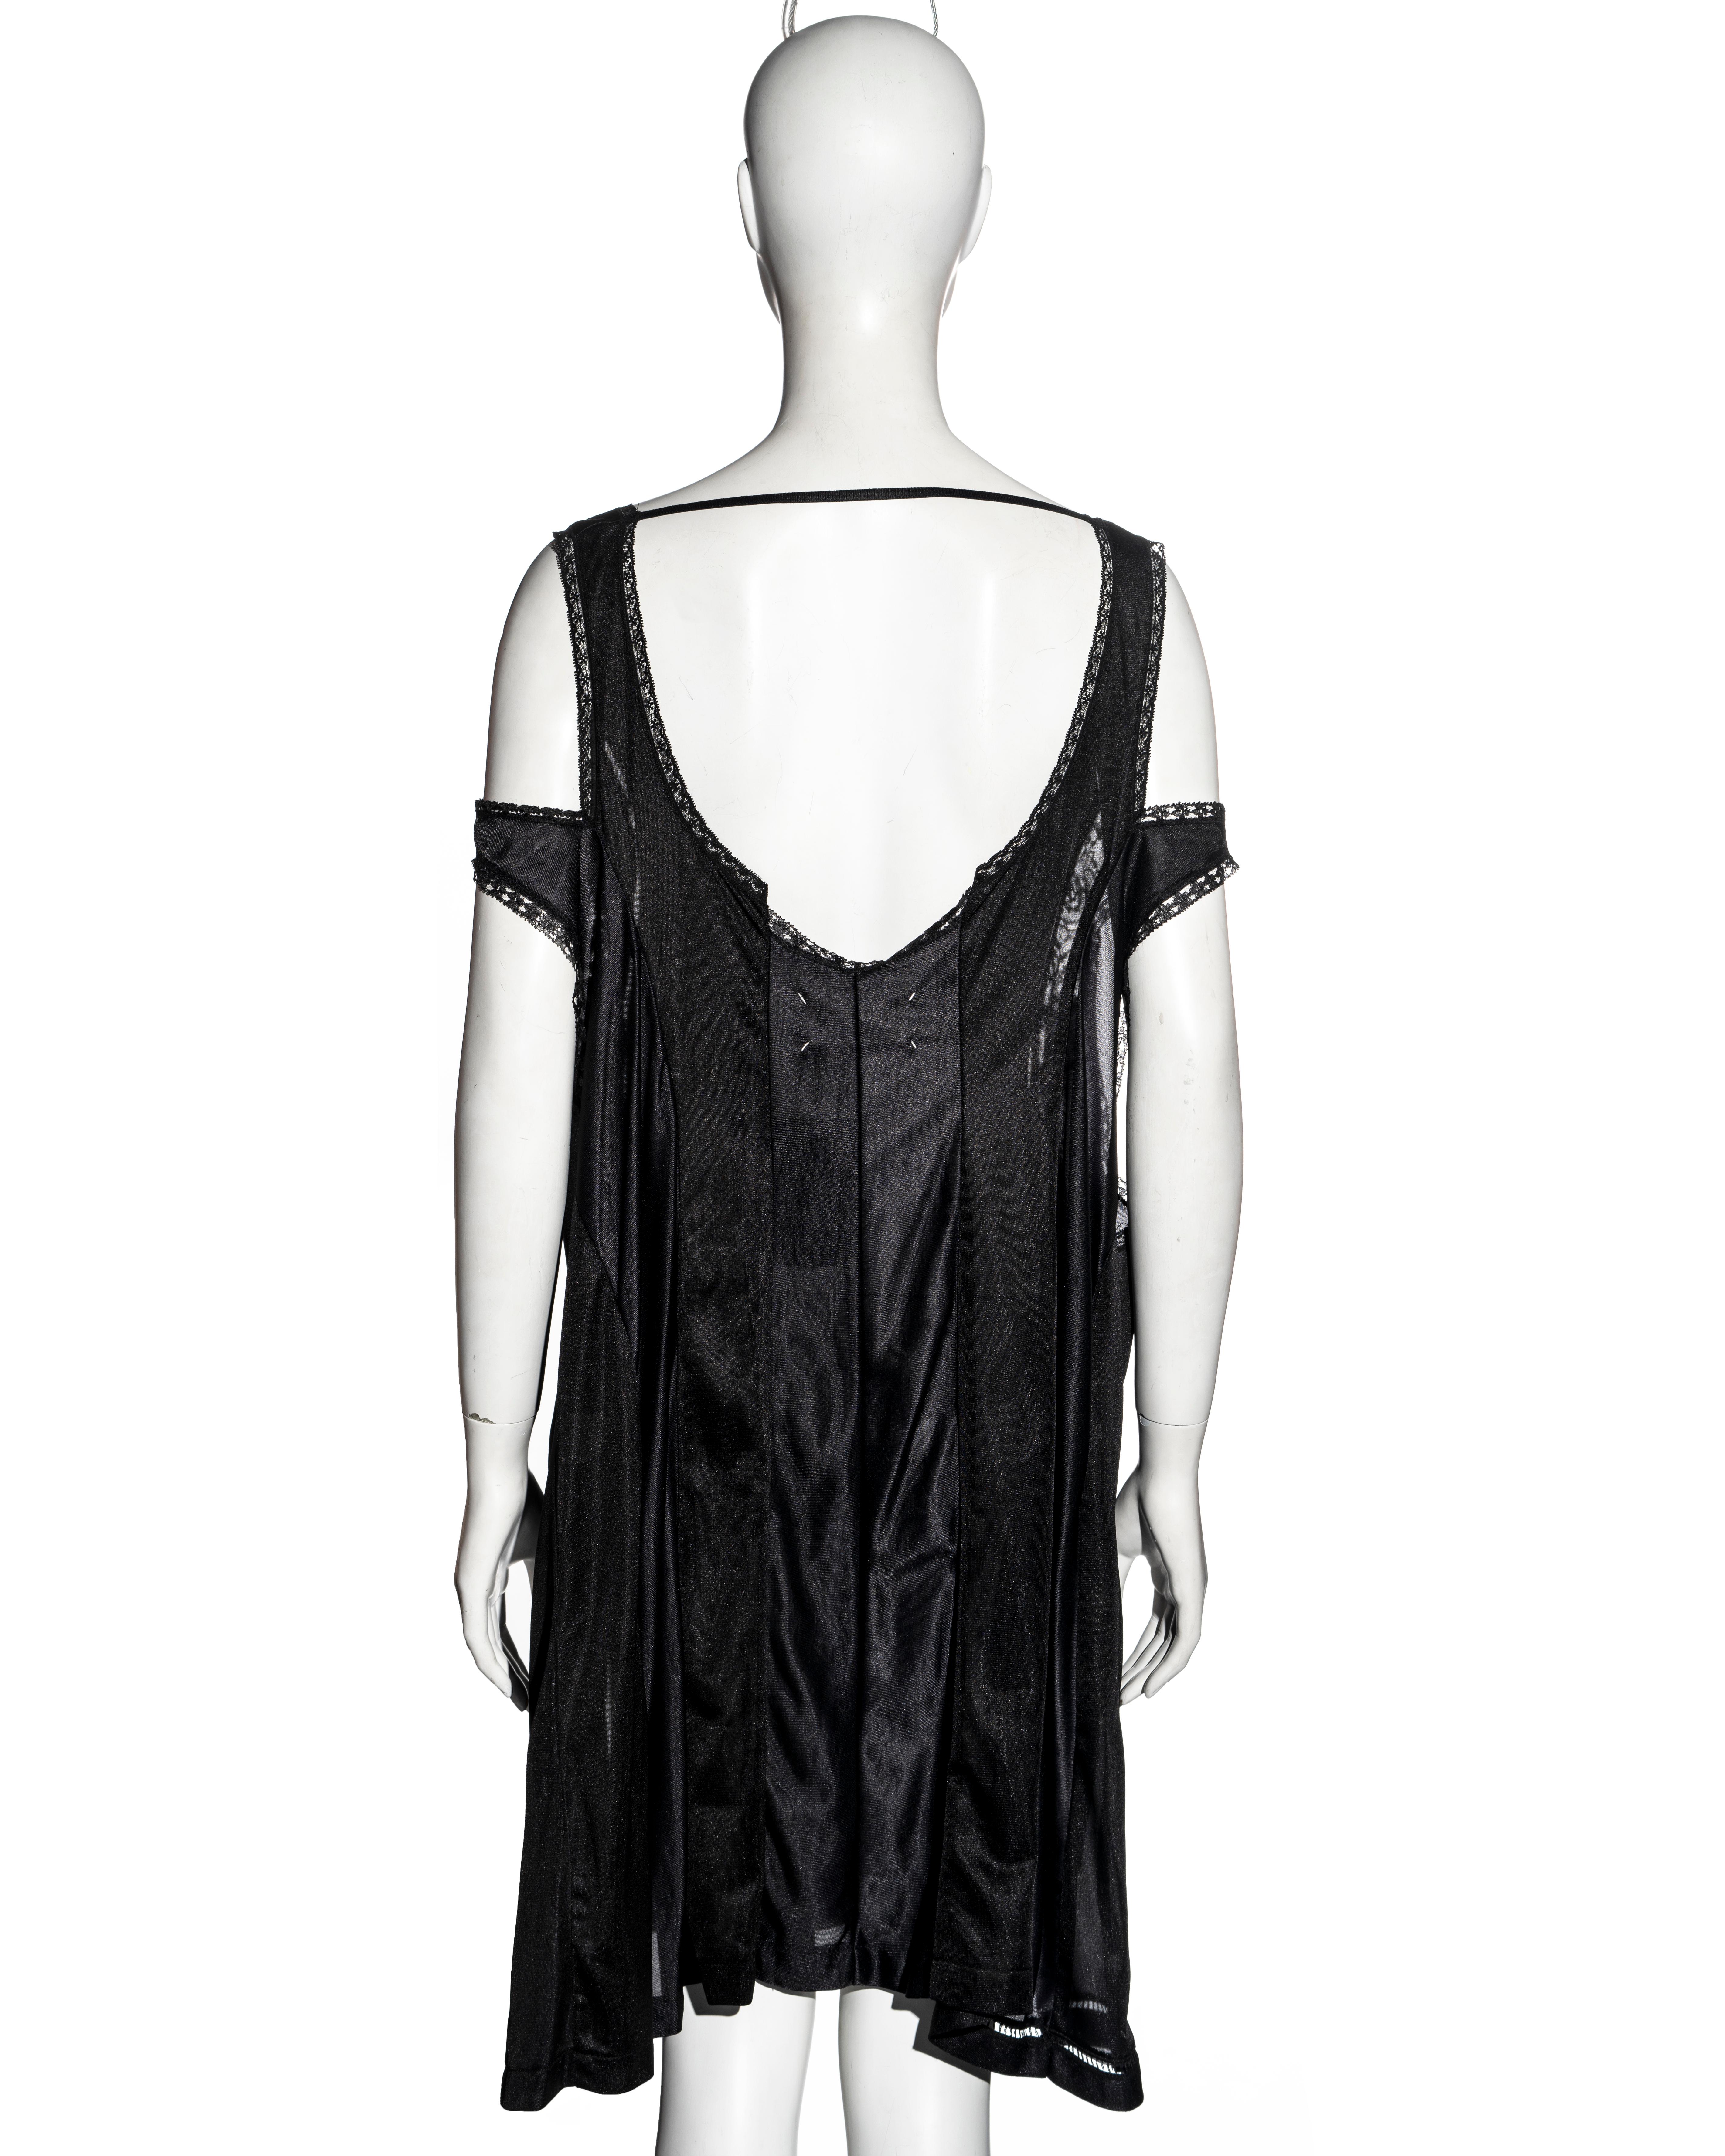 Martin Margiela black oversized artisanal slip dress, ss 2000 3